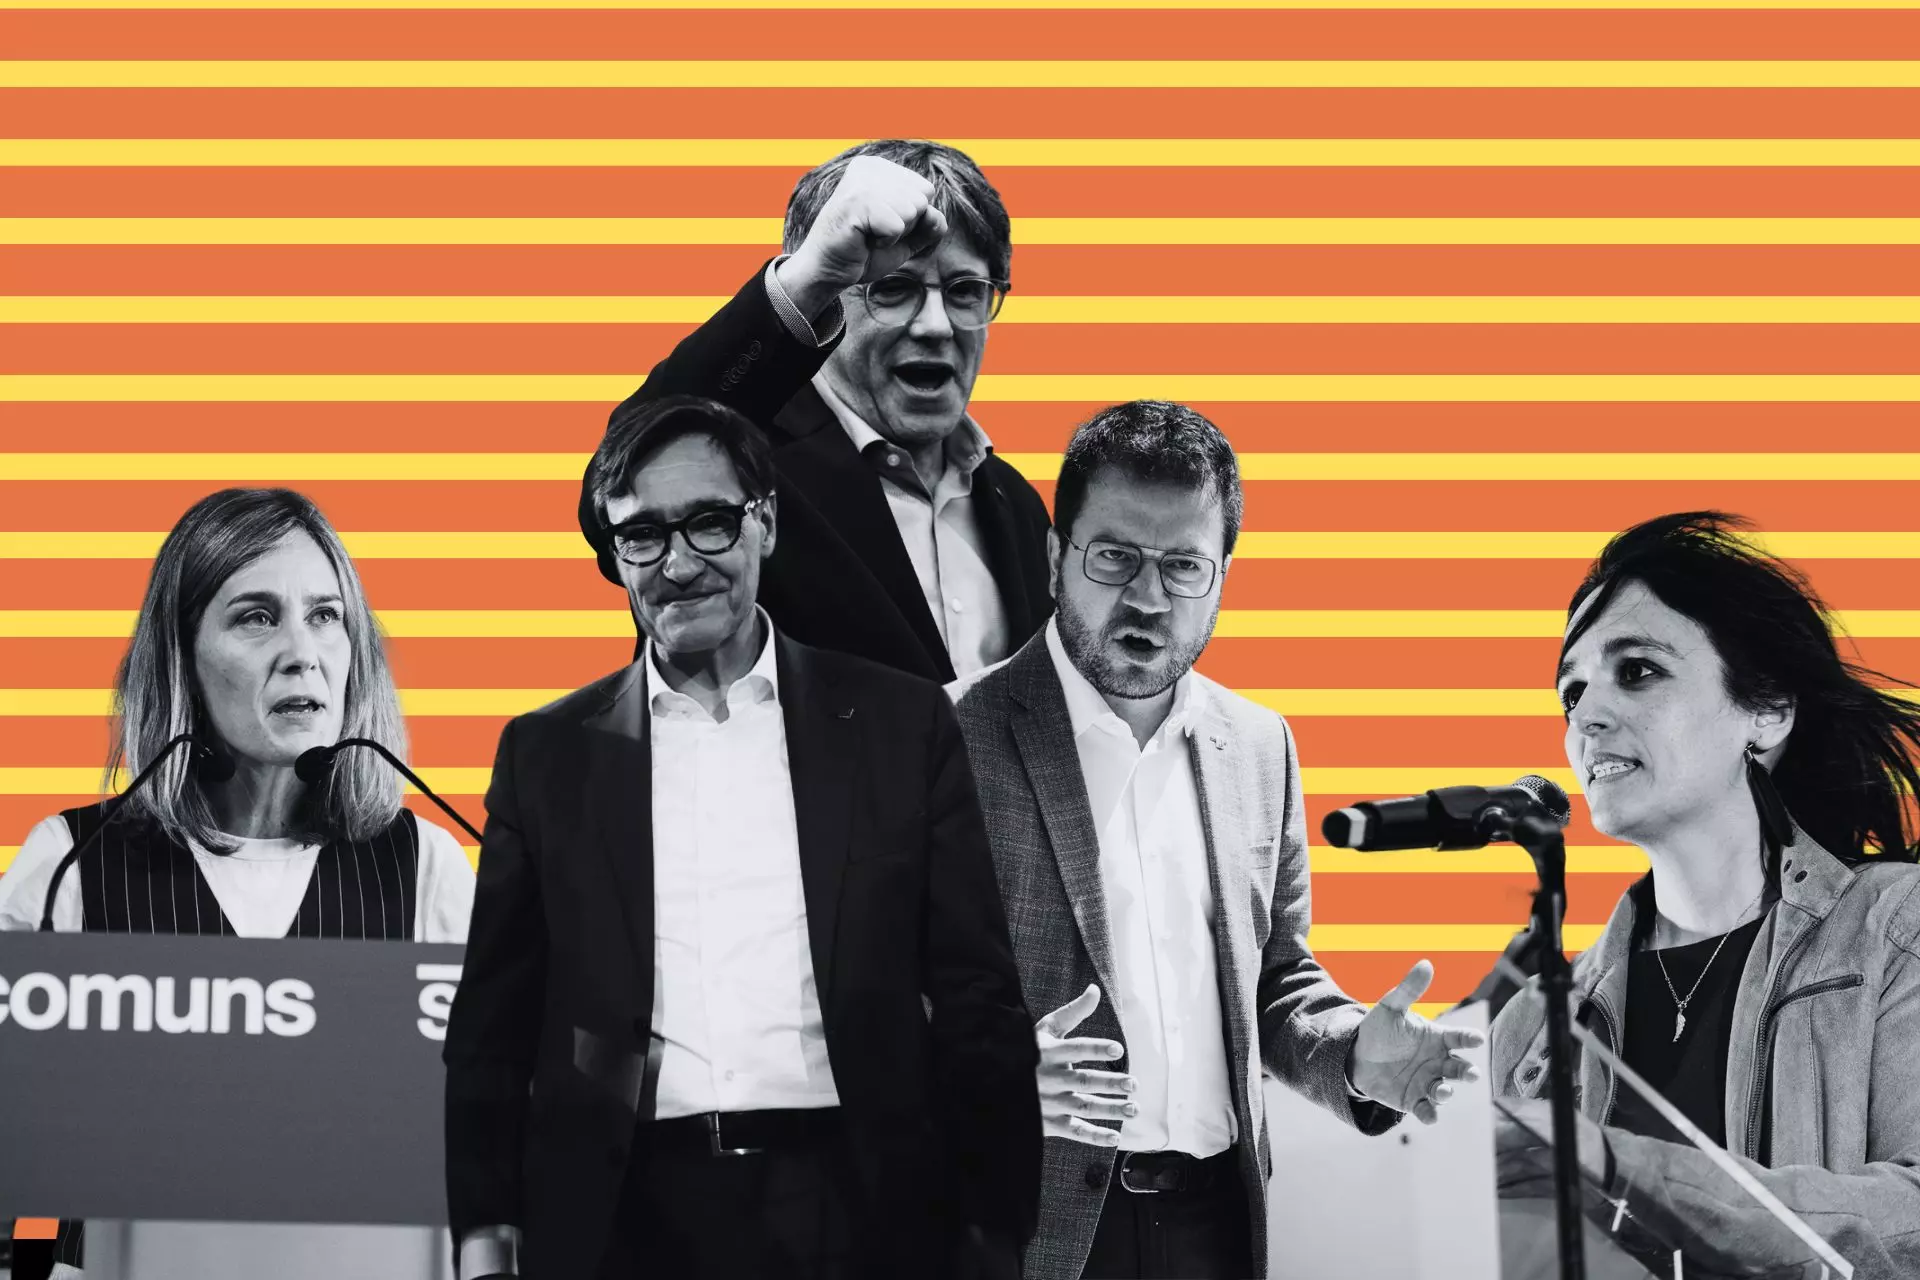 Fotomontaje a partir de imágenes de Europa Press de varios candidatos a la Presidencia de la Generalitat de Catalunya. — Público / Europa Press / Chema Molina